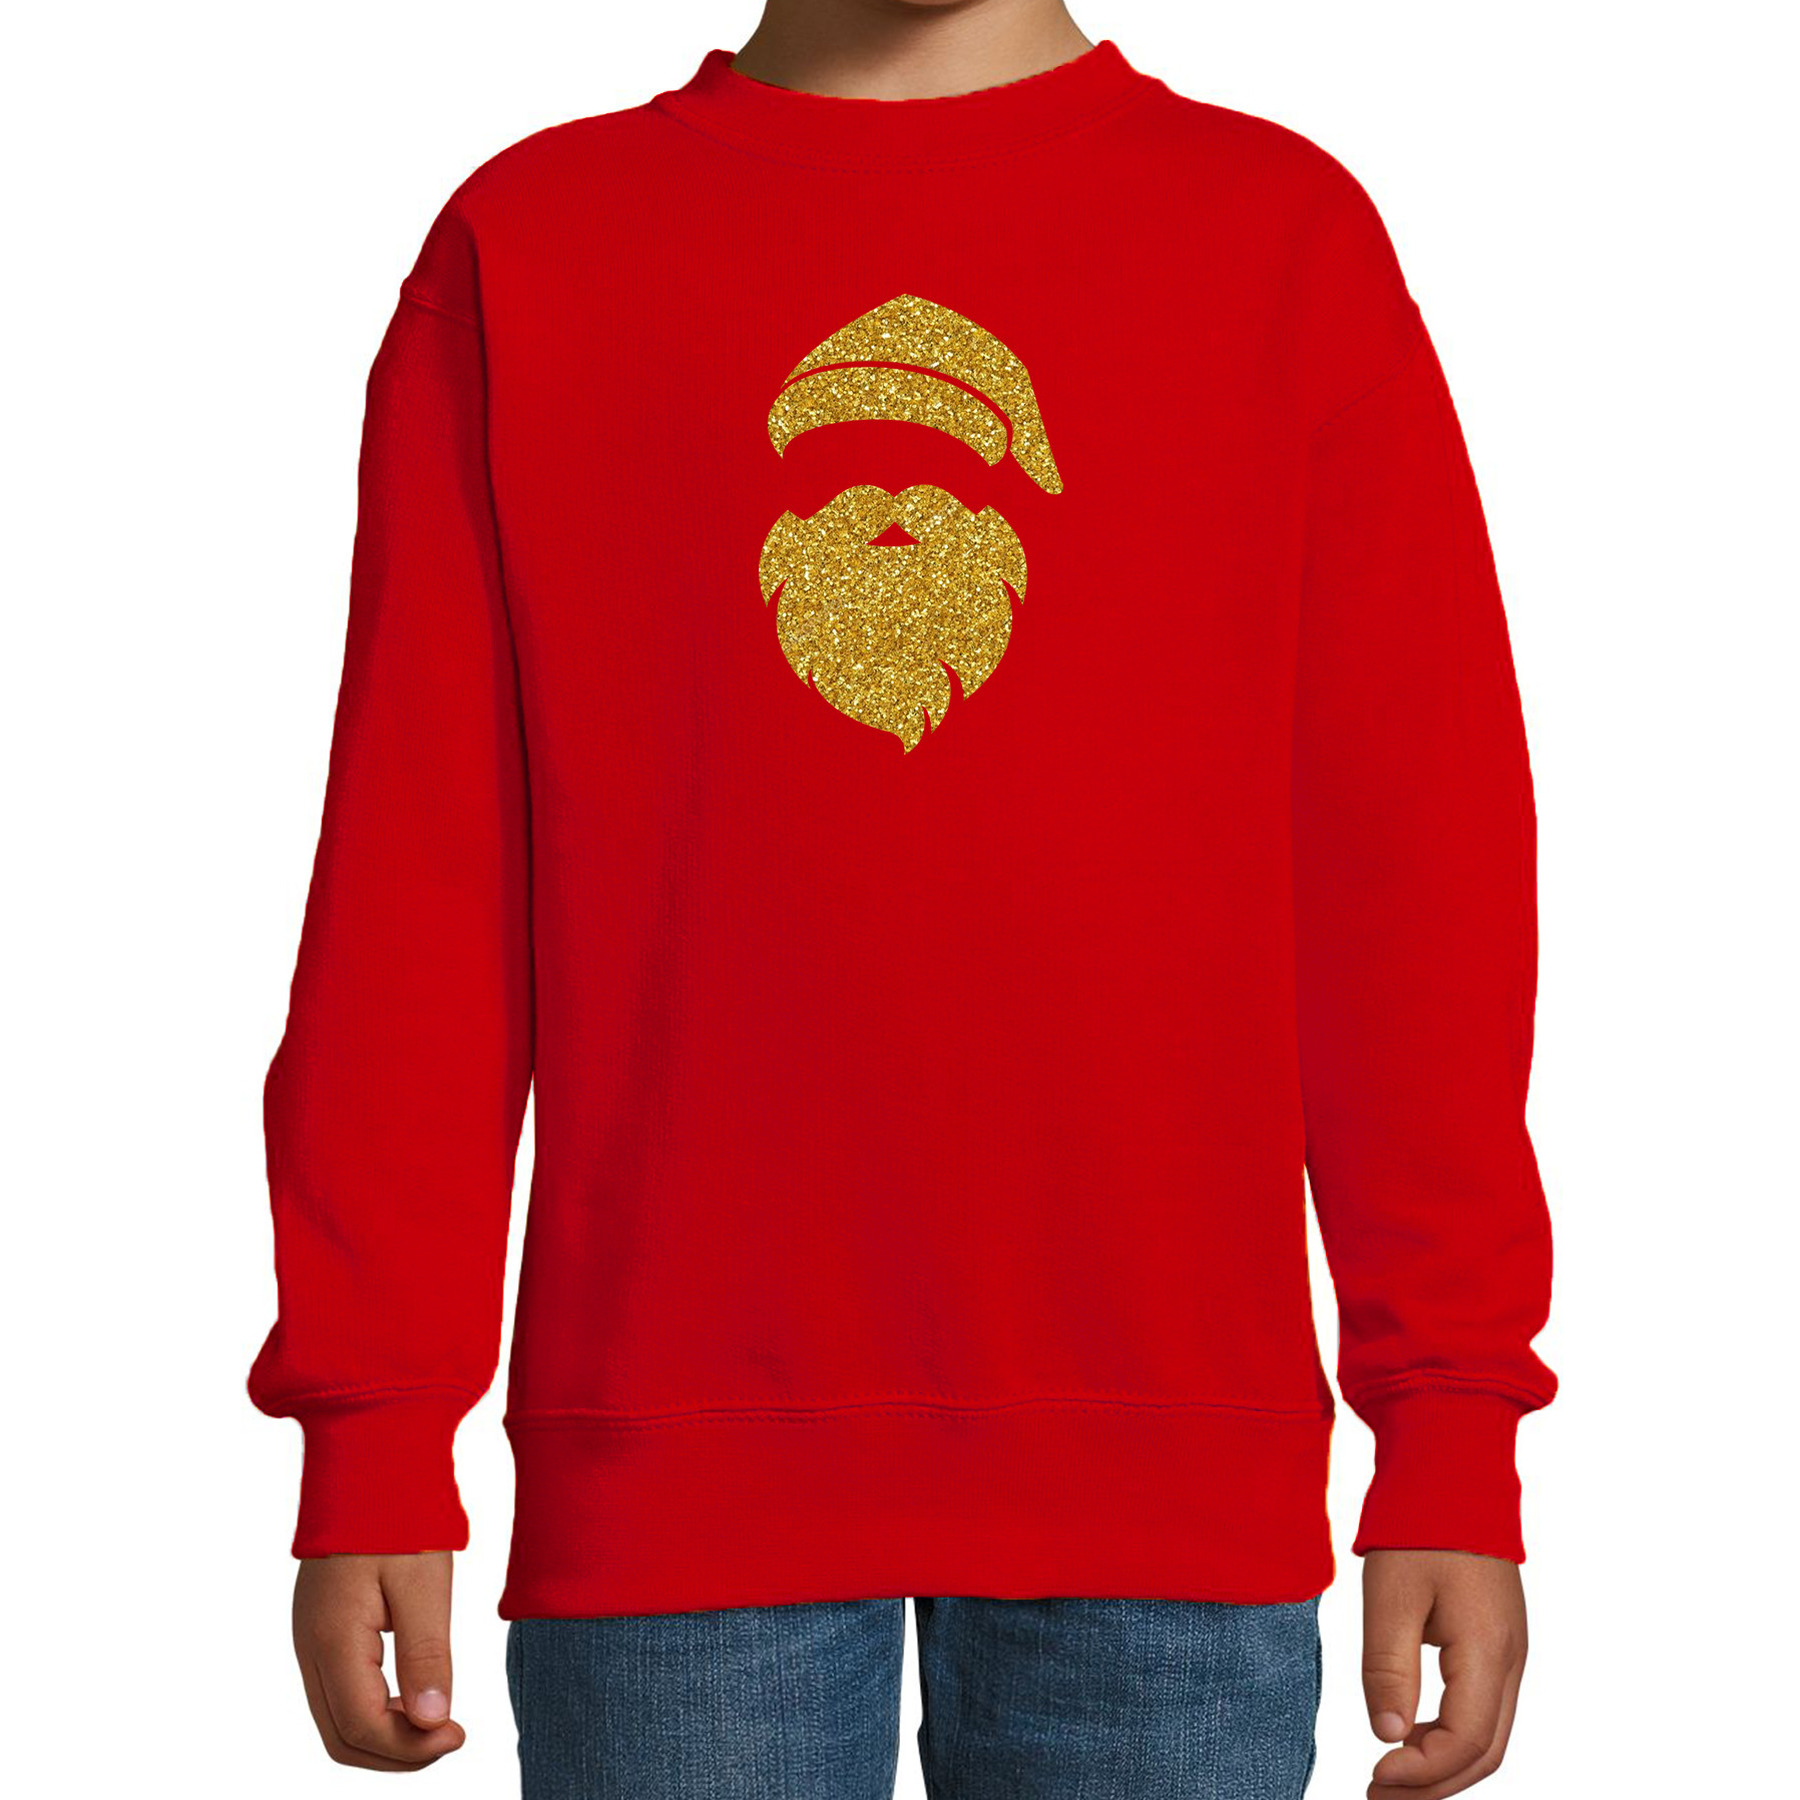 Kerstman hoofd Kerstsweater-Kersttrui rood voor kinderen met gouden glitter bedrukking